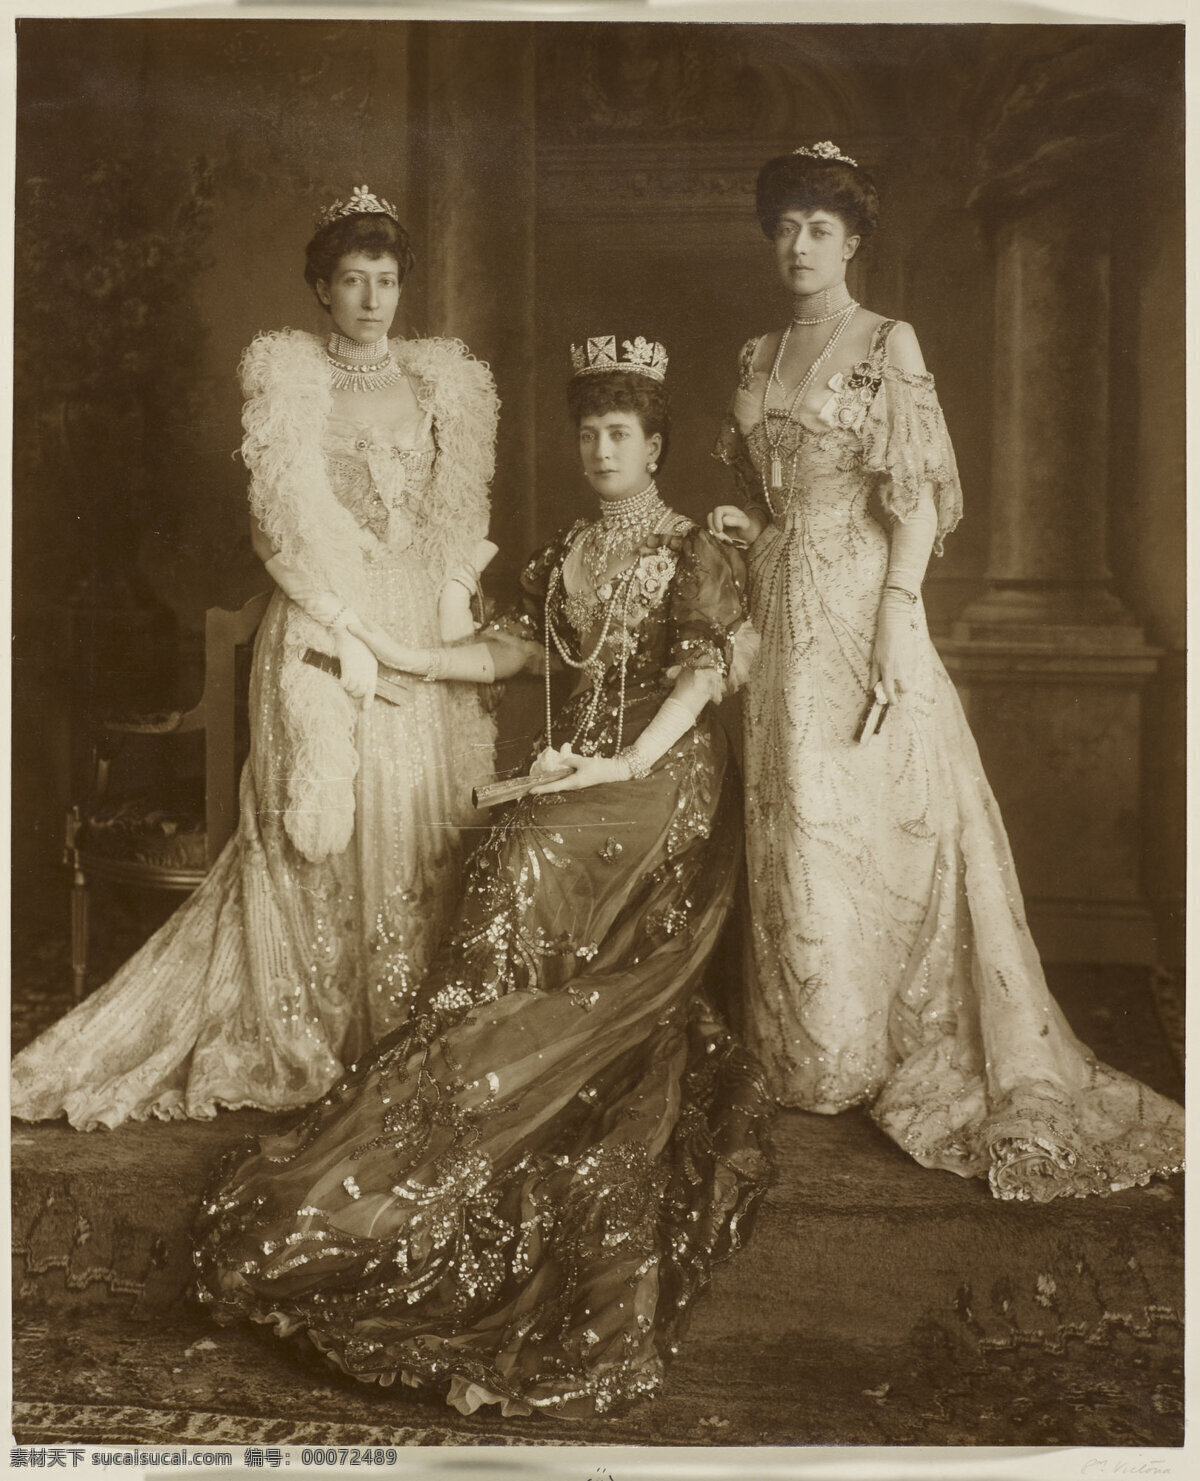 英国王室照片 法芙公爵夫人 路易丝 亚历山德拉 王后 维多利亚公主 老照片 文化艺术 绘画书法